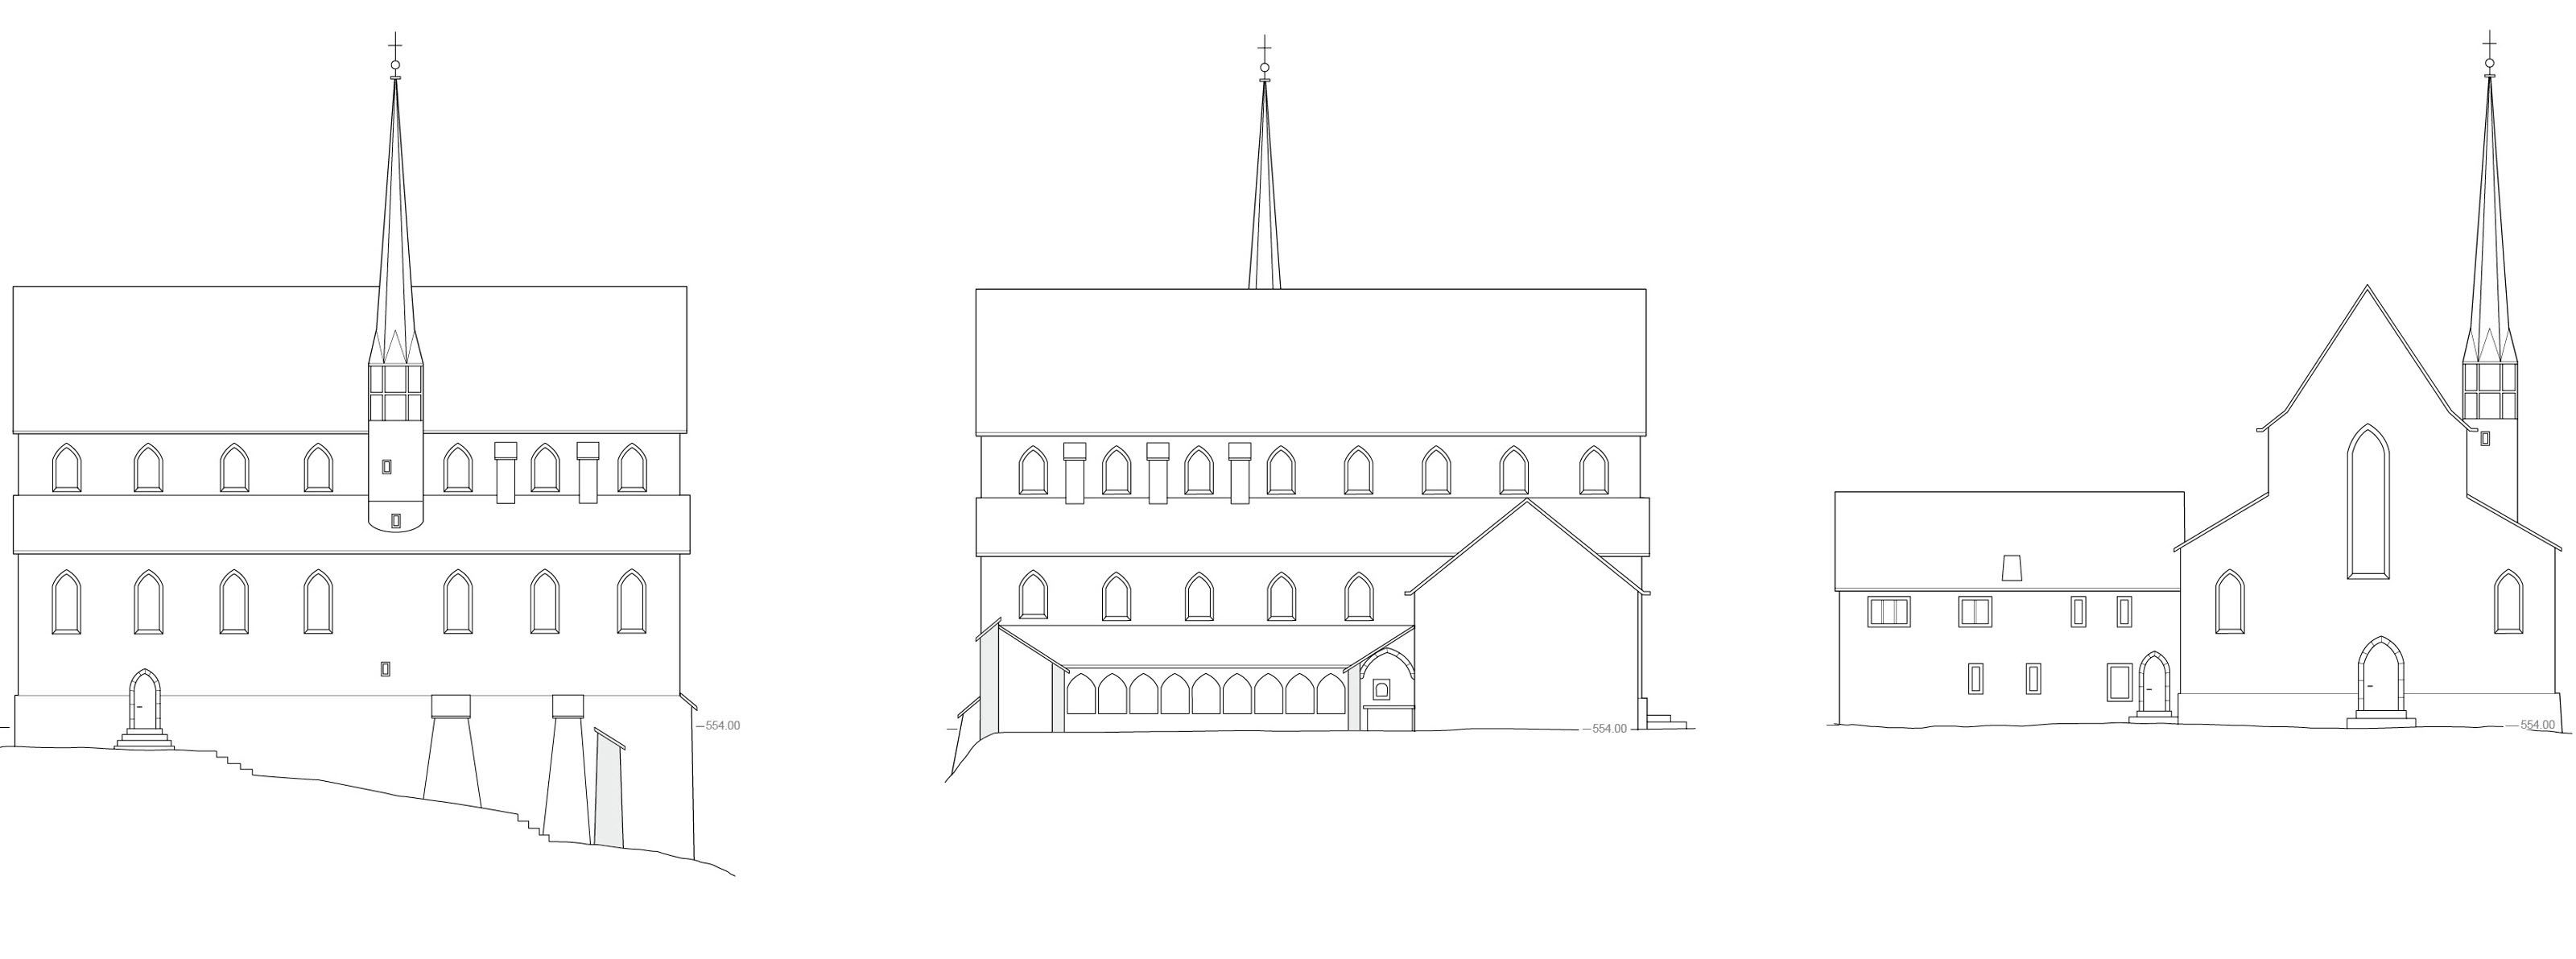 oculus-illustration-beerenberg-kloster-mariazell-winterthur-rekonstruktion-entwicklungsphasen-ansicht-